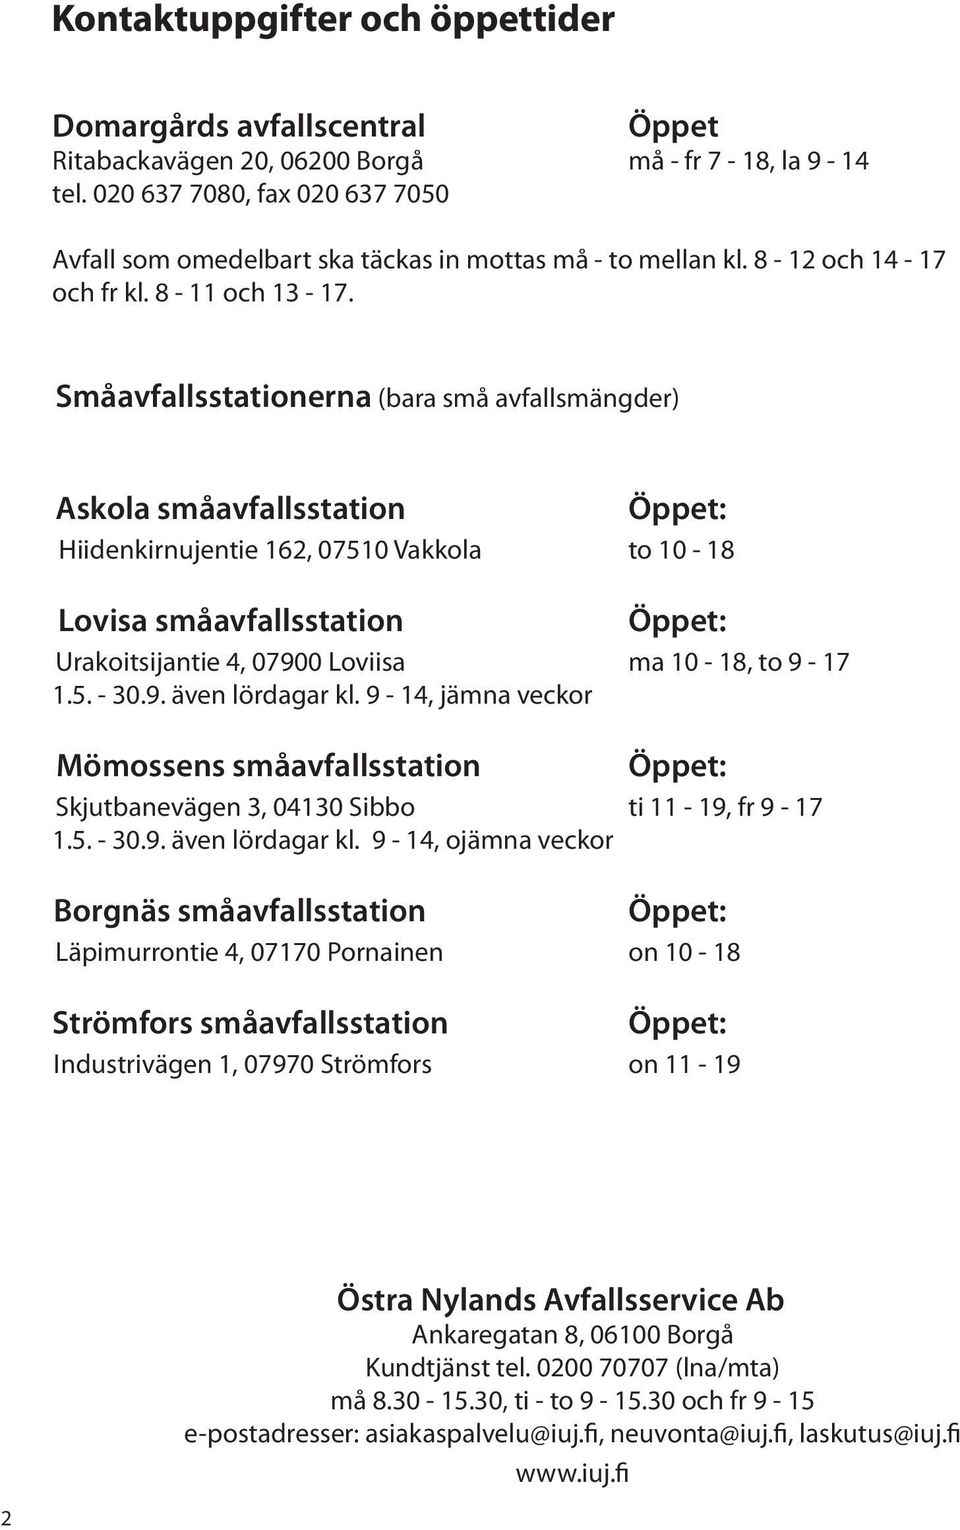 Småavfallsstationerna (bara små avfallsmängder) Askola småavfallsstation Hiidenkirnujentie 162, 07510 Vakkola to 10-18 Lovisa småavfallsstation Urakoitsijantie 4, 07900 Loviisa ma 10-18, to 9-17 1.5. - 30.